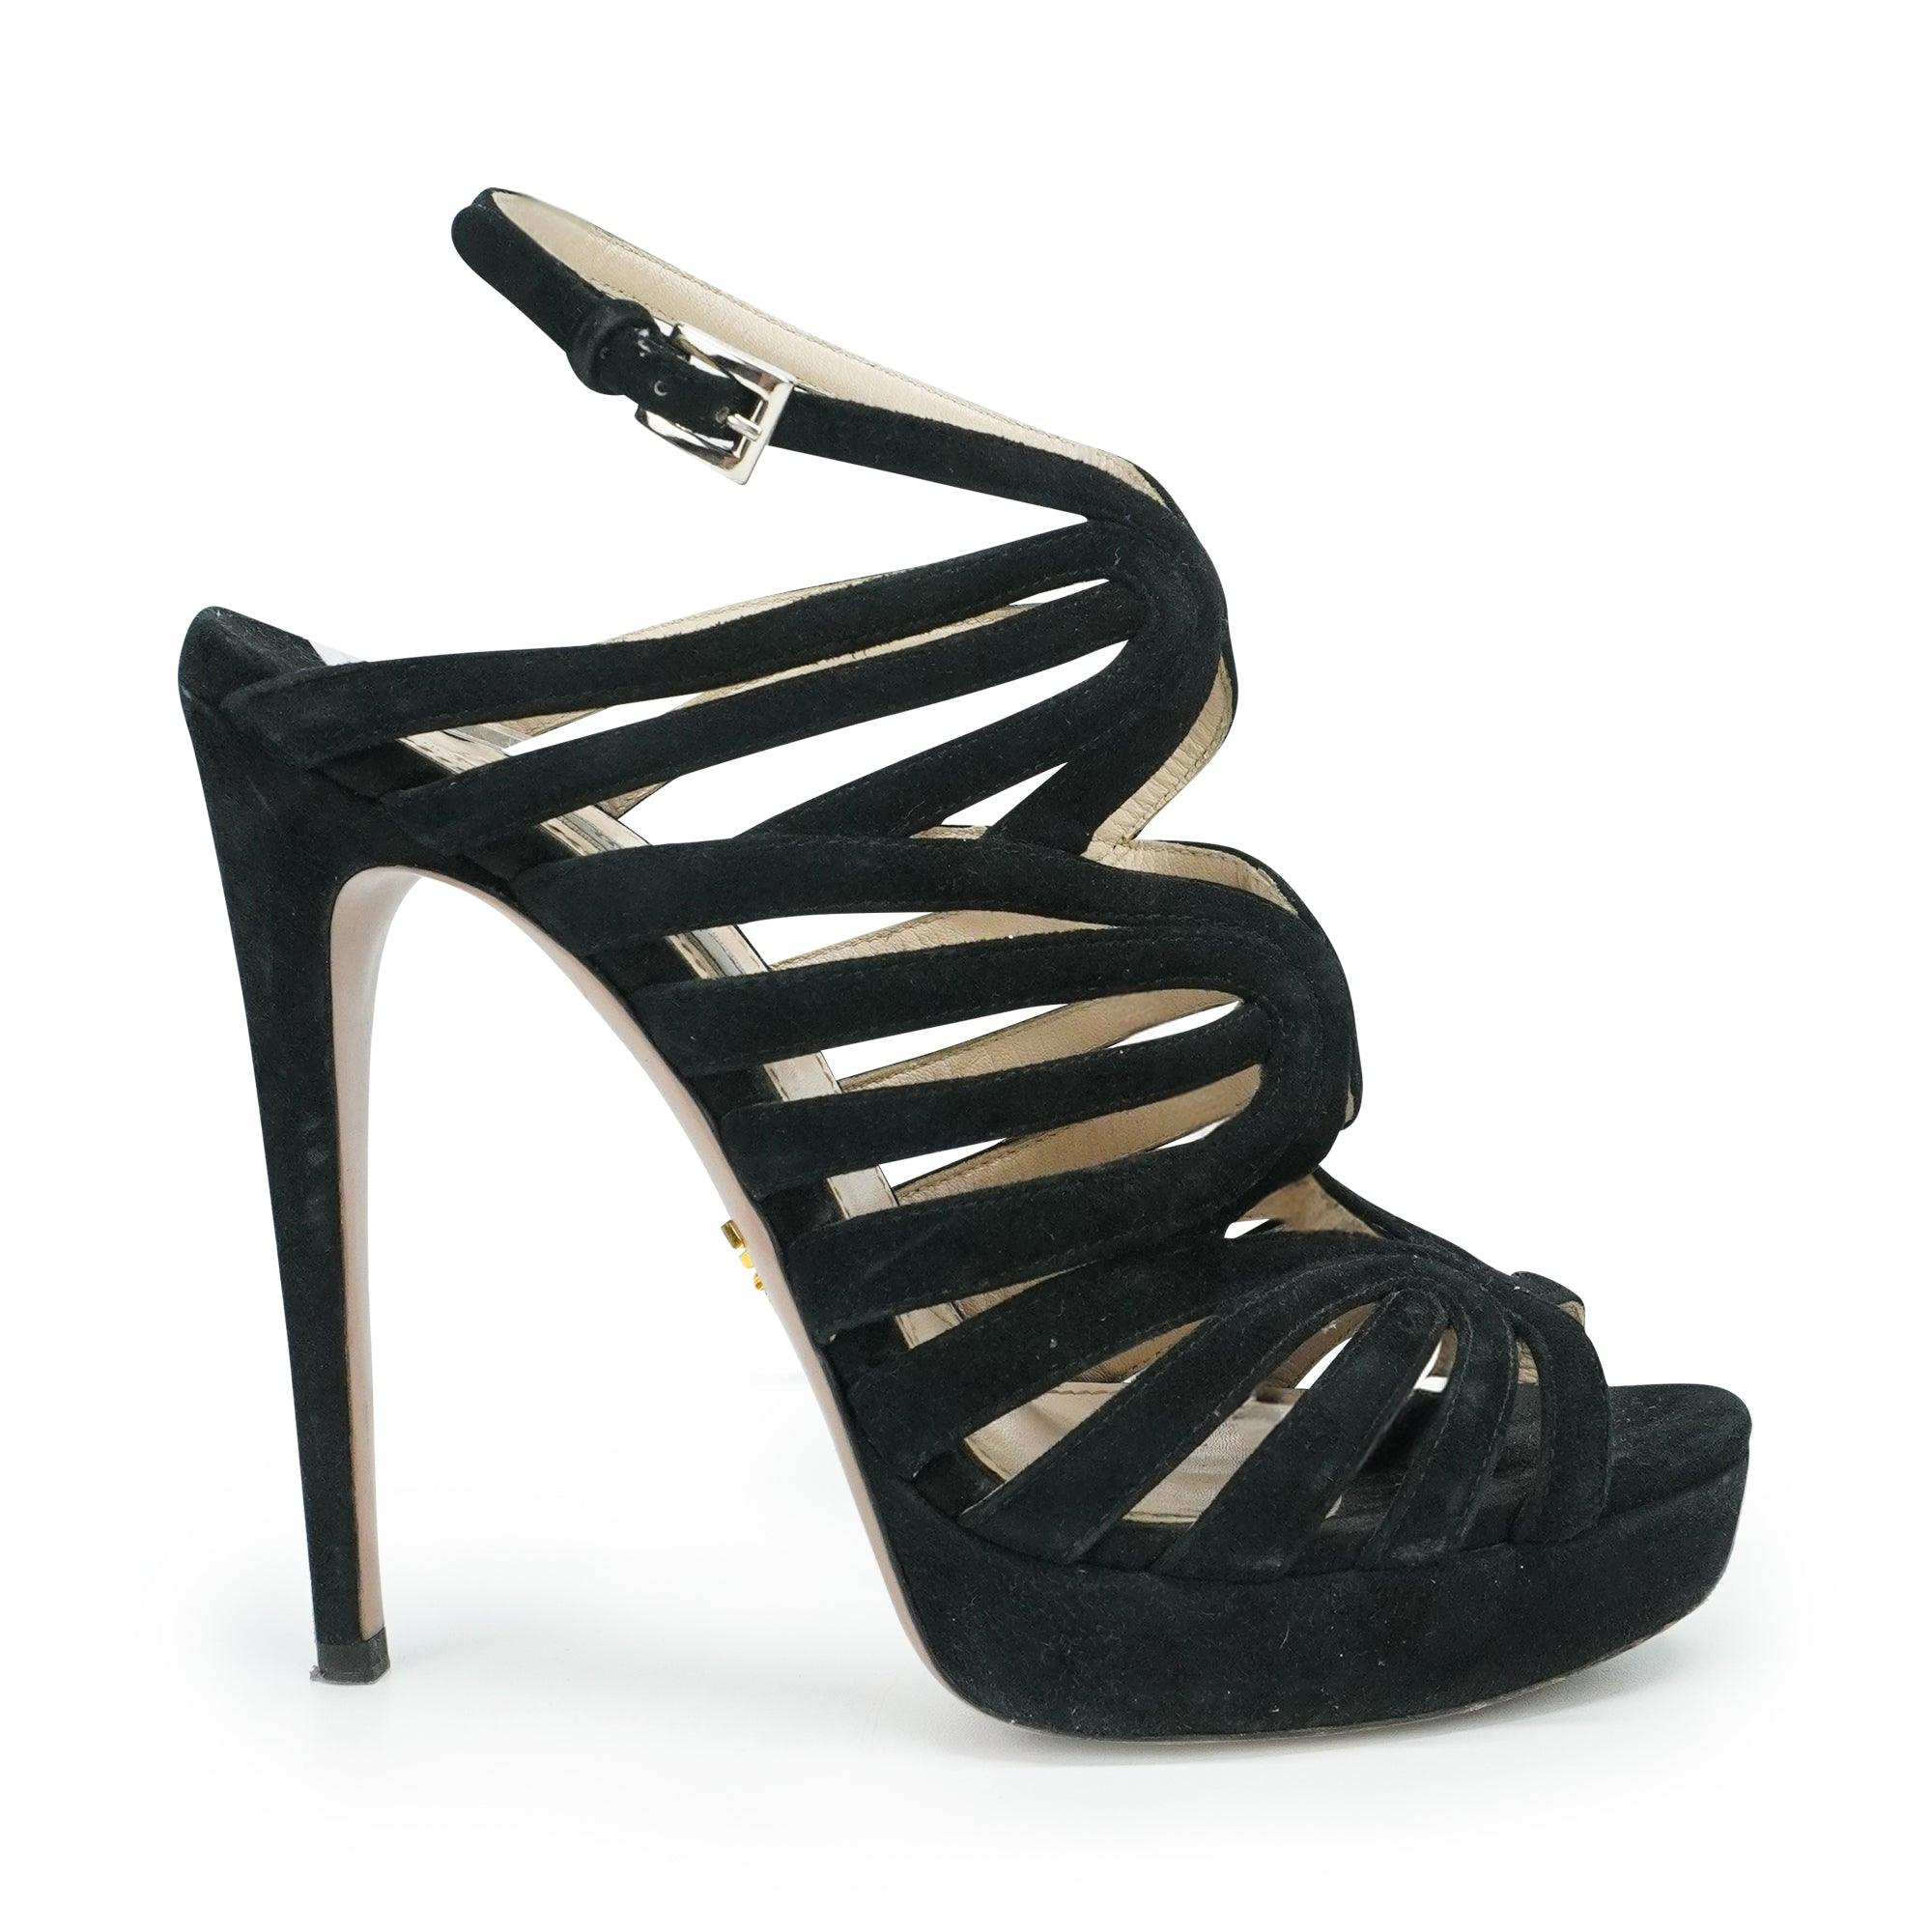 Prada Strappy Heels - Women's 39 - Fashionably Yours